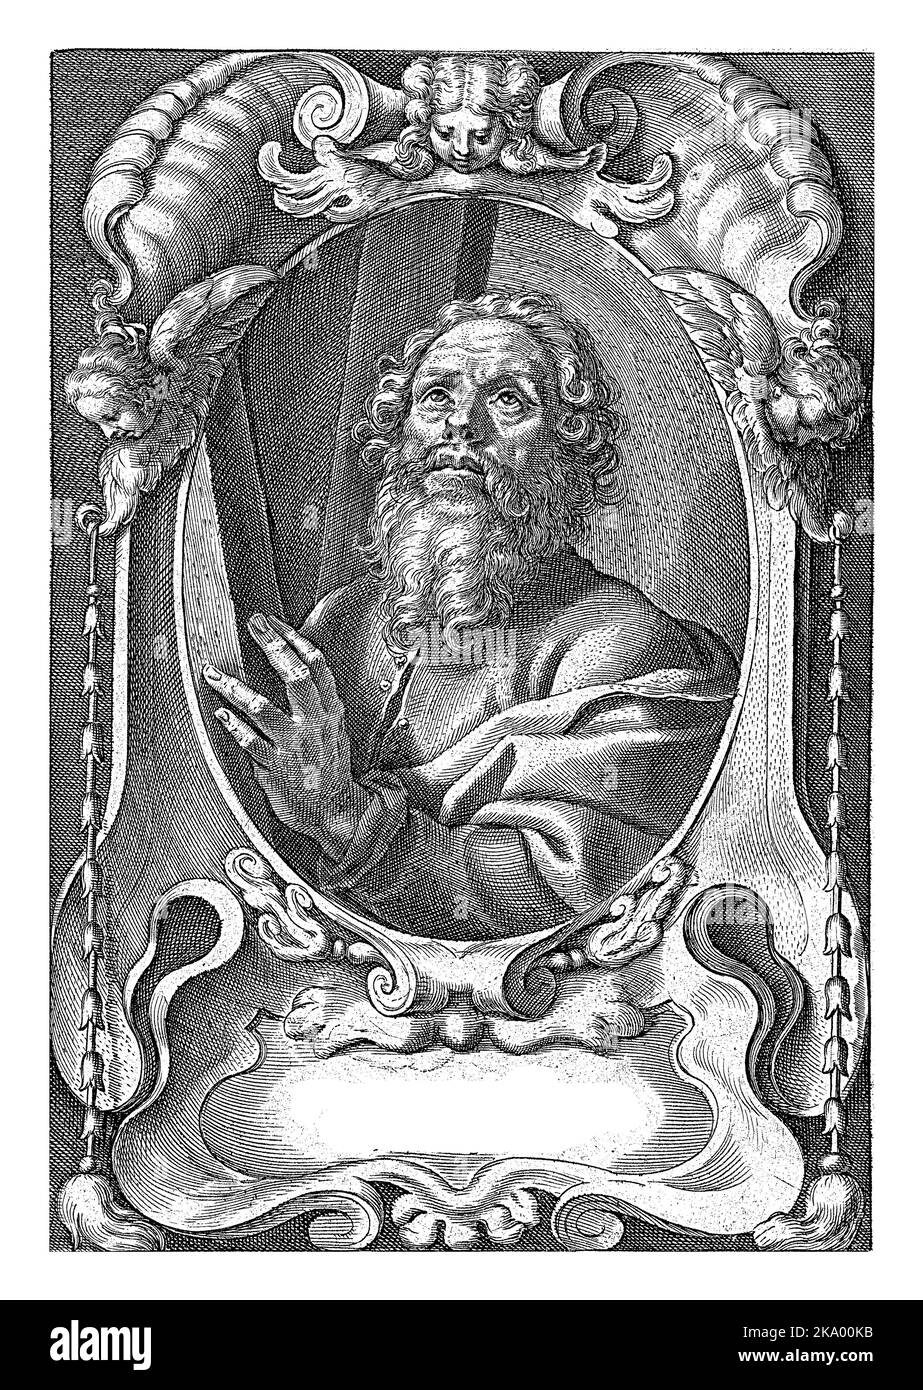 L'apôtre Andreas au cadre croisé avec ornements architecturaux, Jan-Baptist Barbé, d'après Theodporte van Loon, 1588 - 1648 Banque D'Images